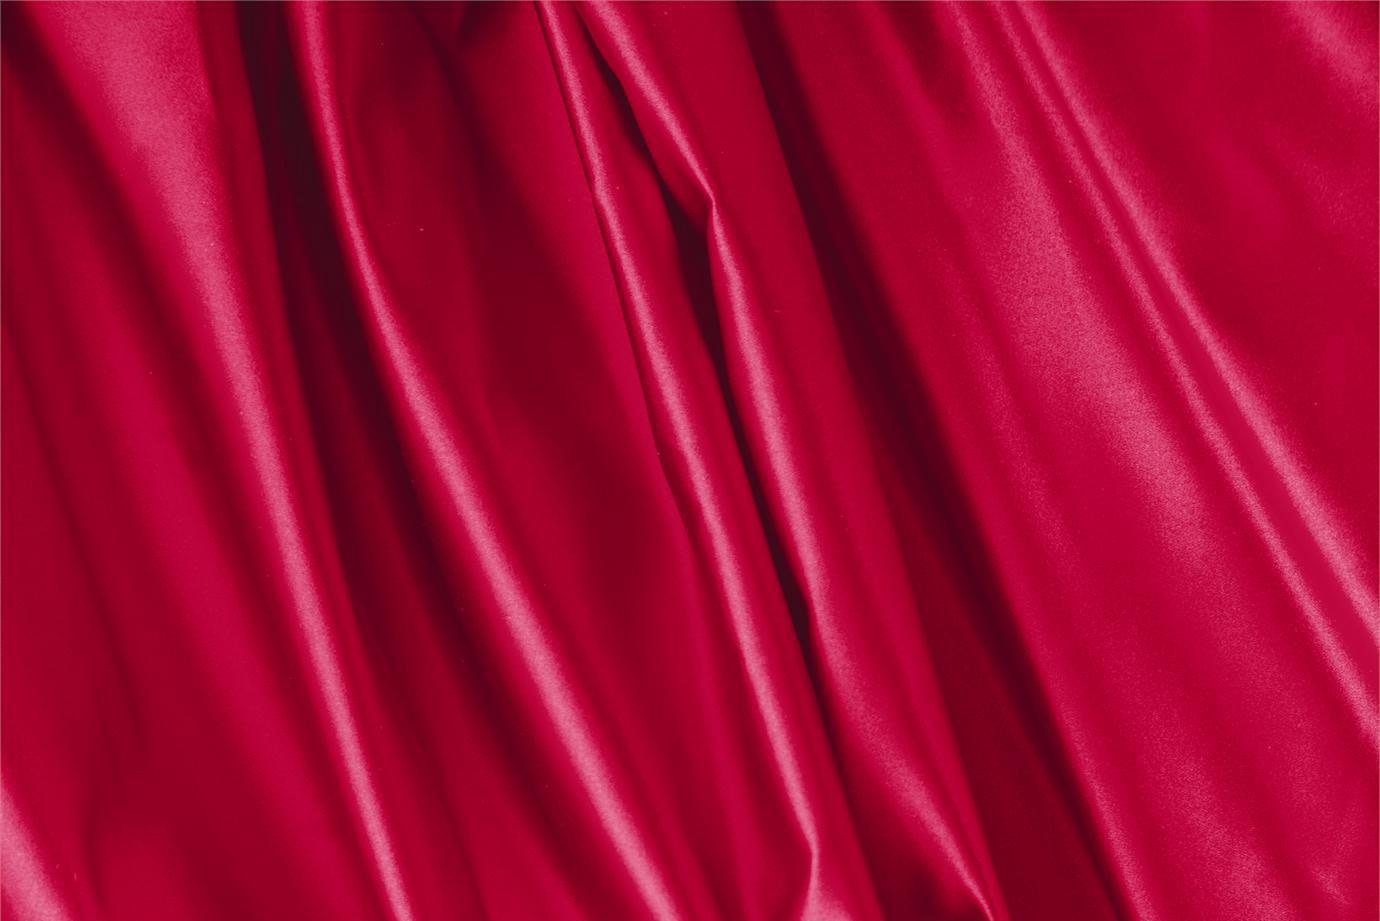 Tissu Duchesse Rouge rubis en Soie pour vêtements